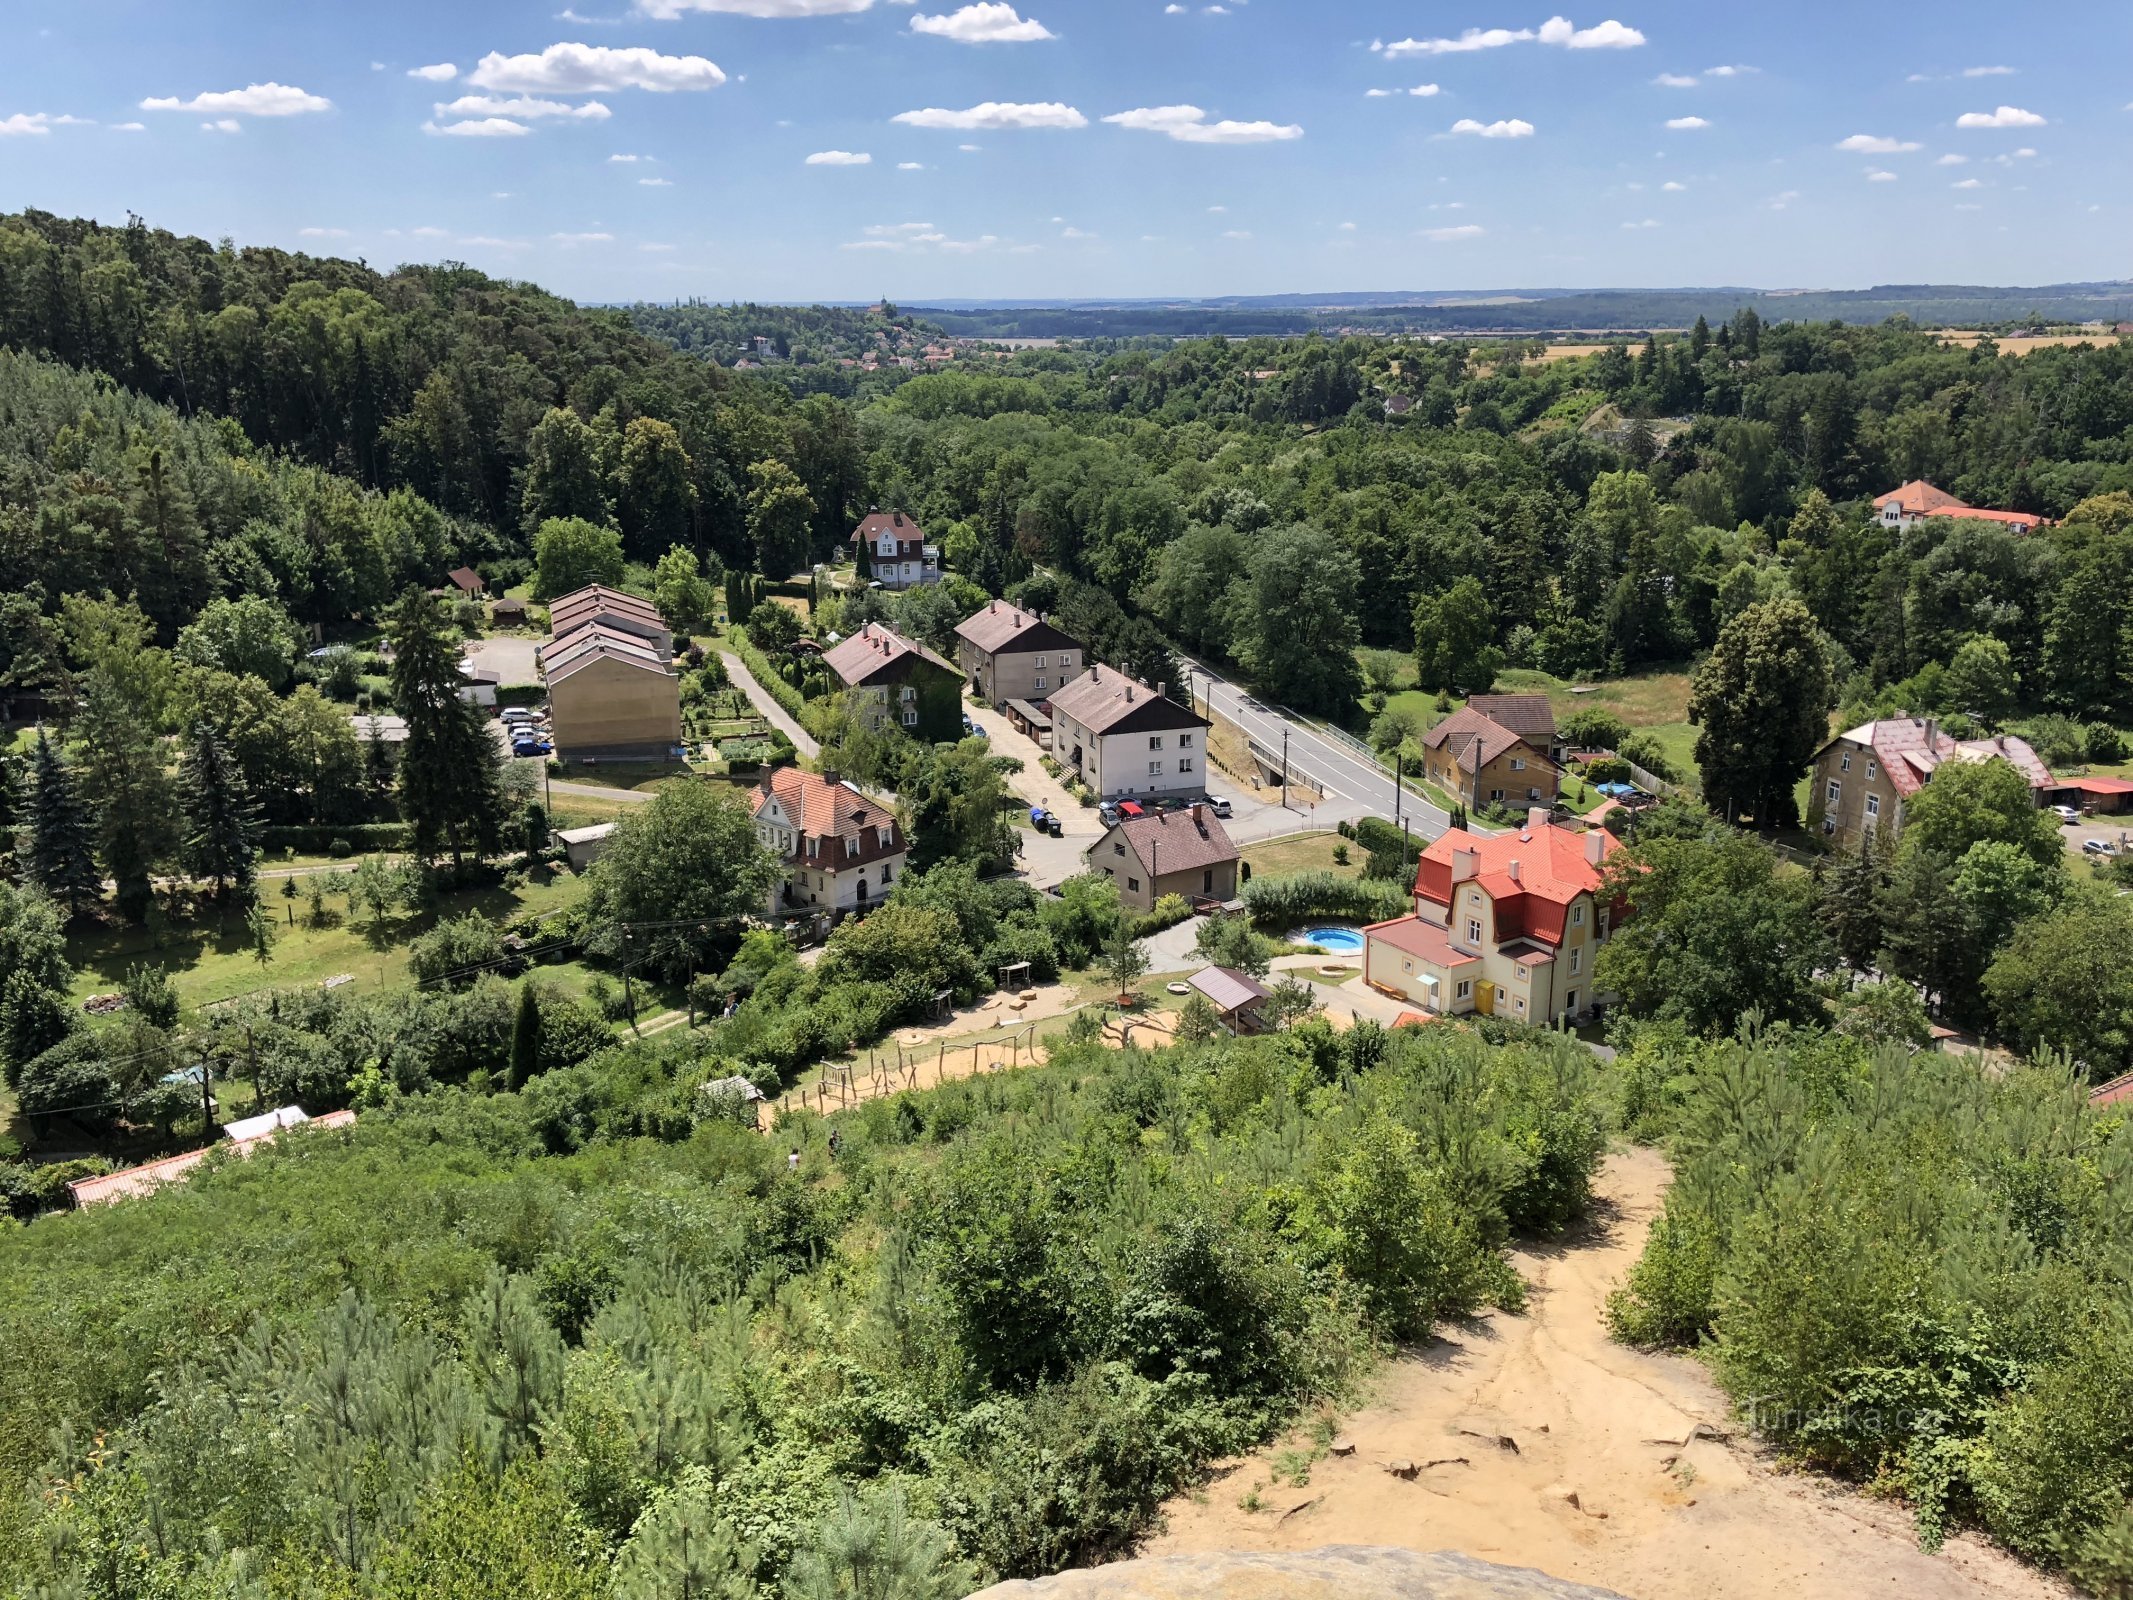 Uitzicht vanaf het uitkijkpunt op de Liběchovka-vallei en het dorp Želízy